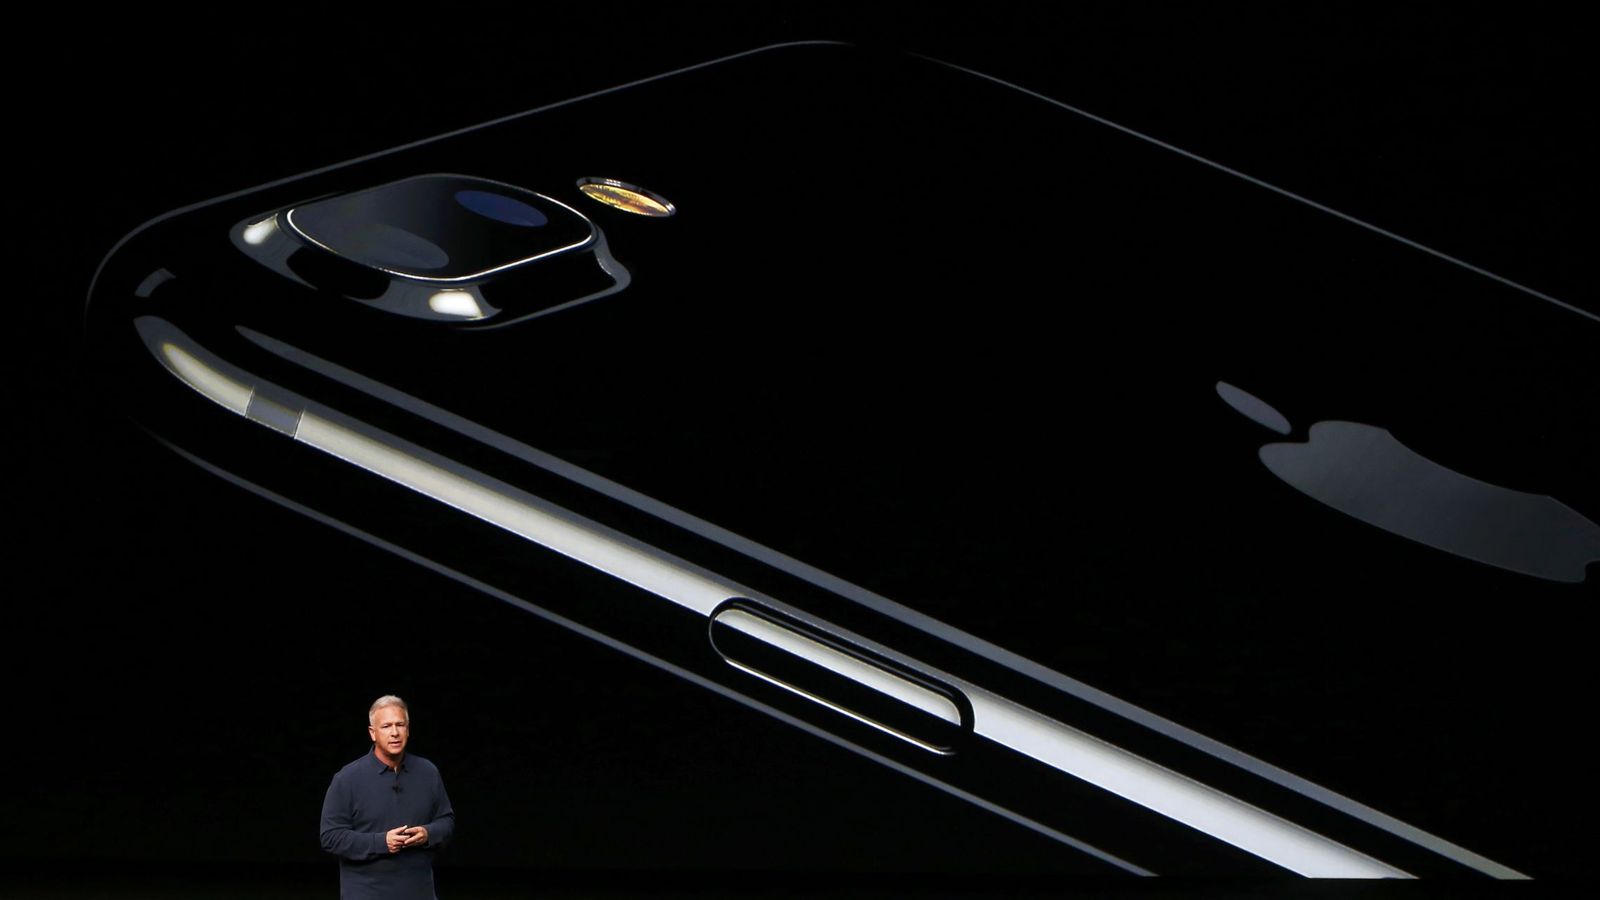 Probamos el iPhone 7 y 7 Plus: Apple, me has decepcionado